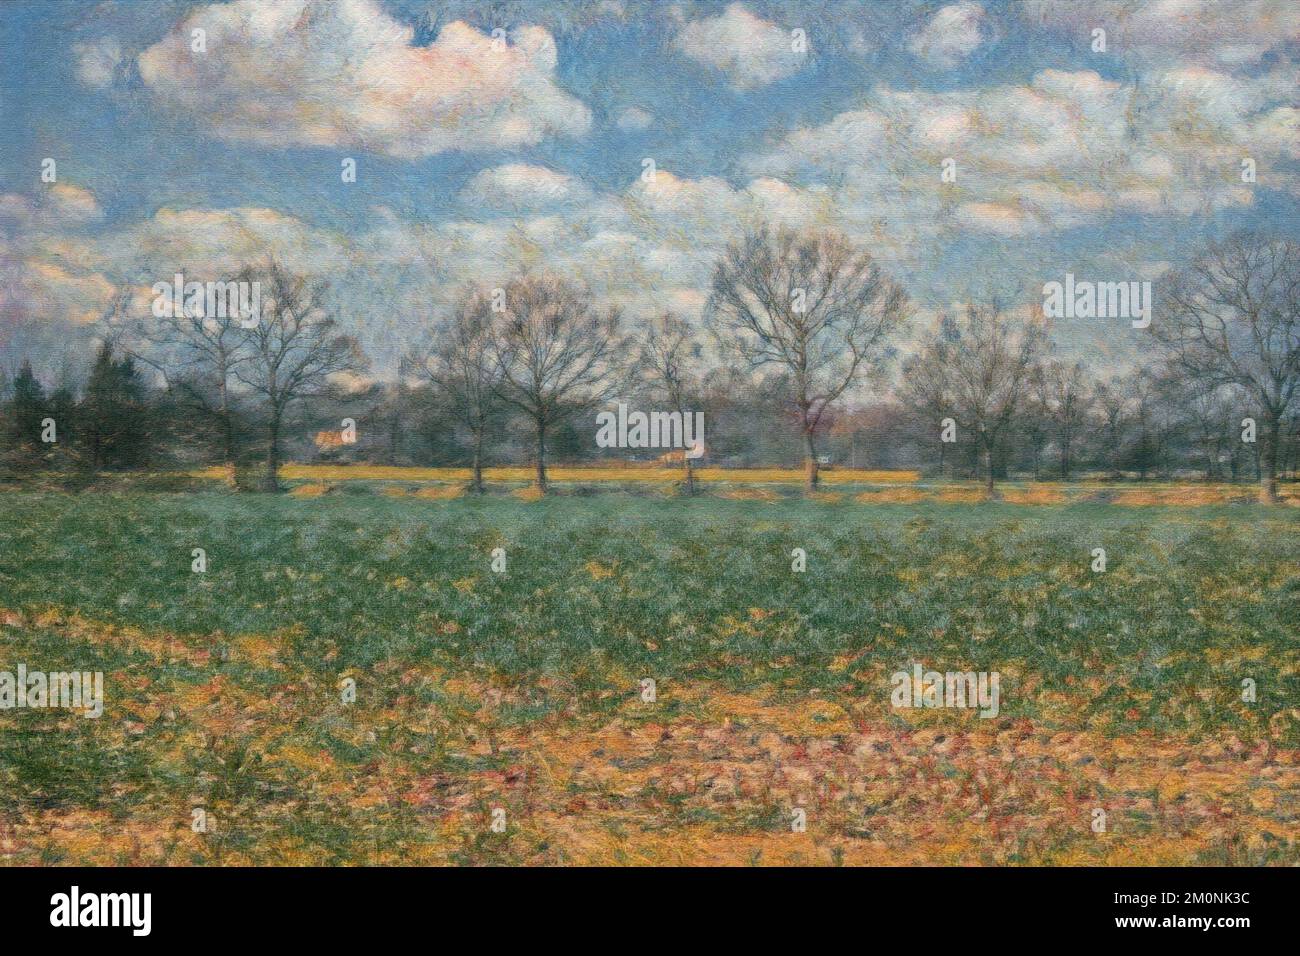 Pittura digitale del paesaggio di campagna che mostra il campo agricolo e gli alberi senza fronde sotto il cielo blu nuvoloso, stile impressionista Foto Stock